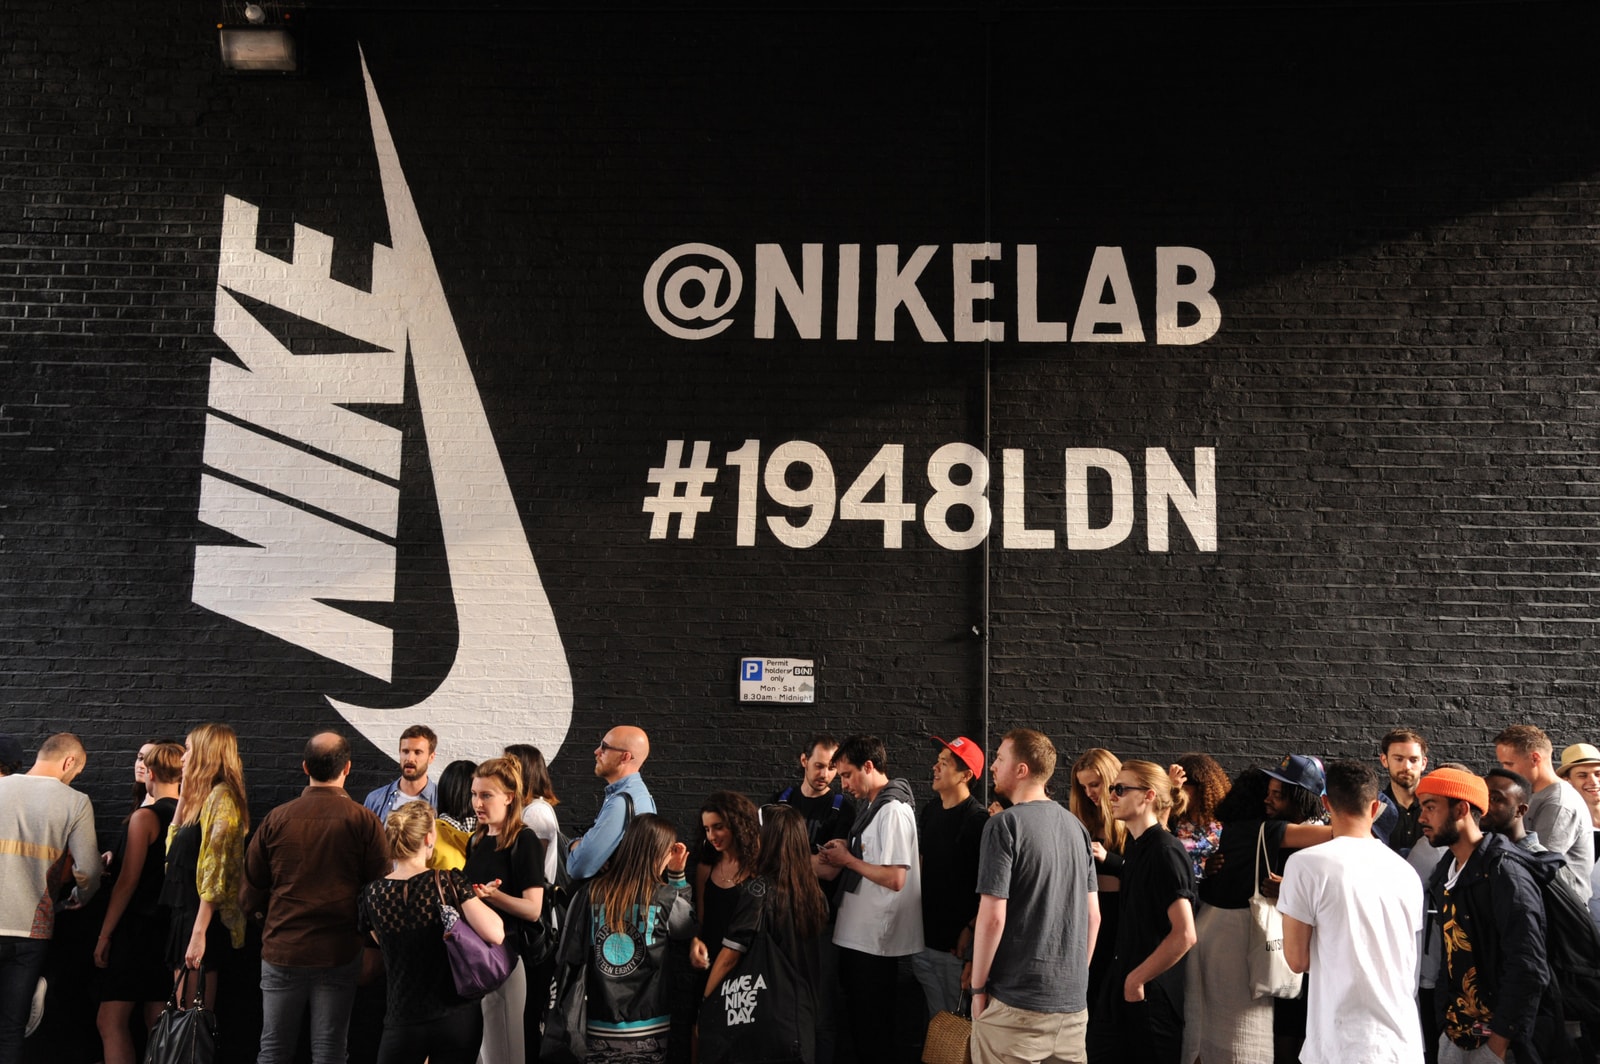 功成身退？回顾 NikeLab 在过去近十年间的发展变迁 